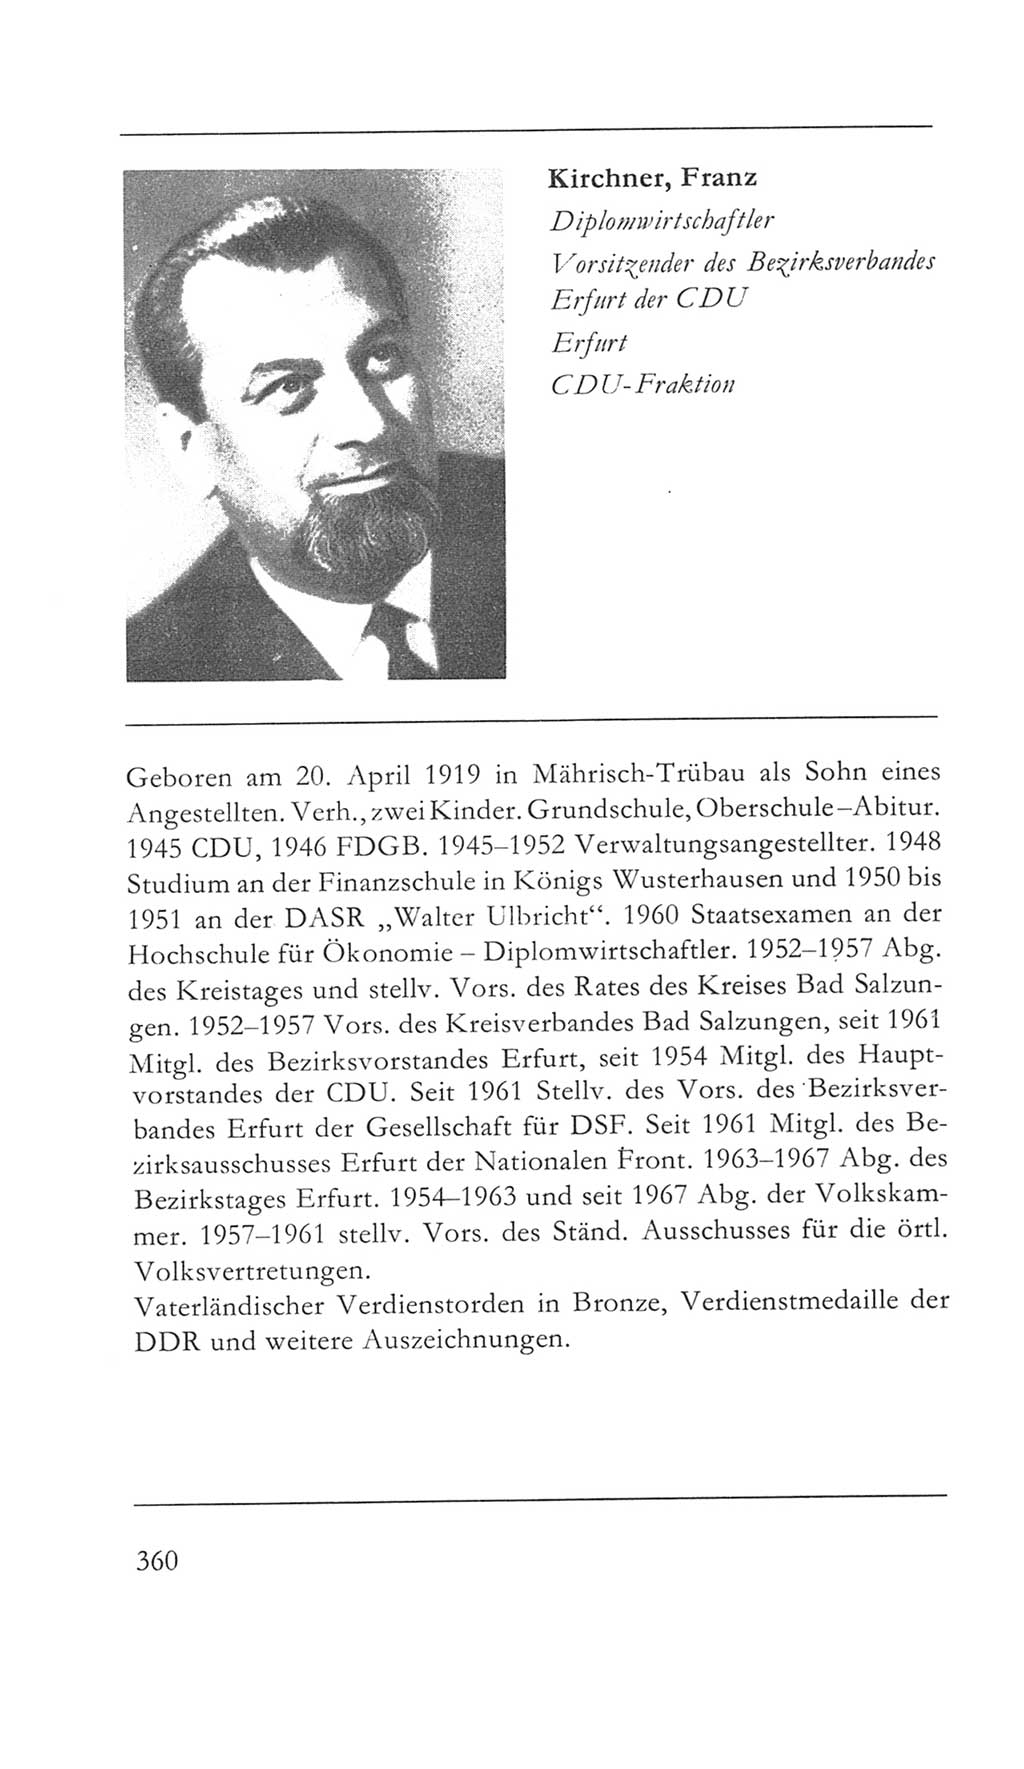 Volkskammer (VK) der Deutschen Demokratischen Republik (DDR) 5. Wahlperiode 1967-1971, Seite 360 (VK. DDR 5. WP. 1967-1971, S. 360)